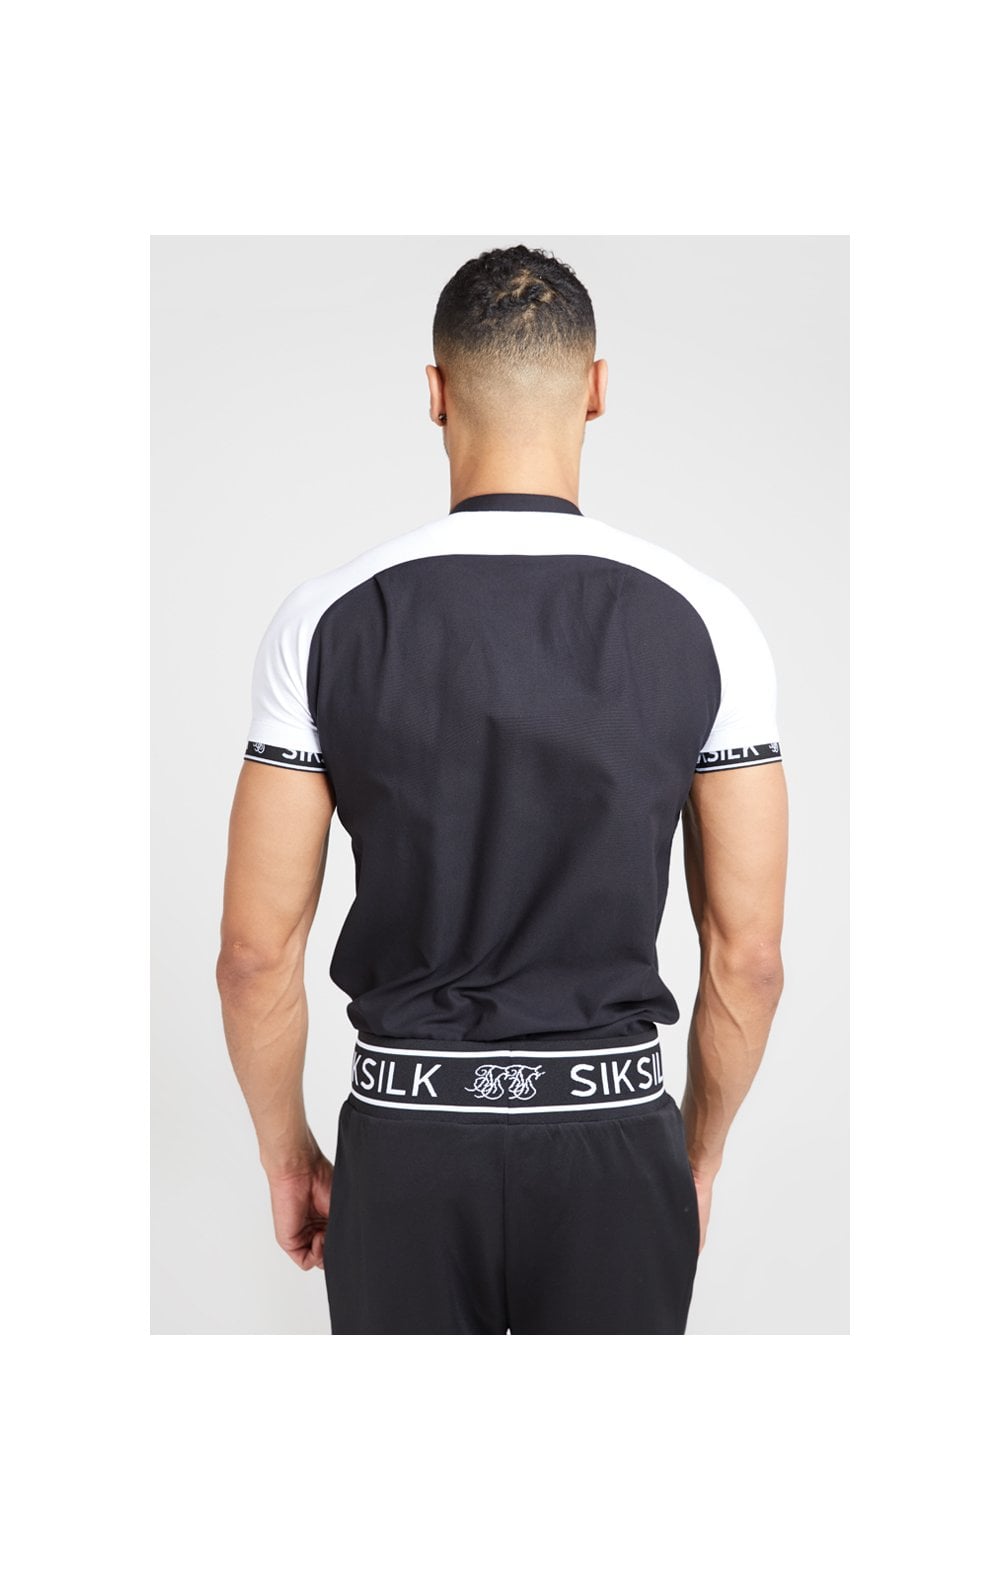 SikSilk S/S Oxford Raglan Tech Shirt - Black & White (3)